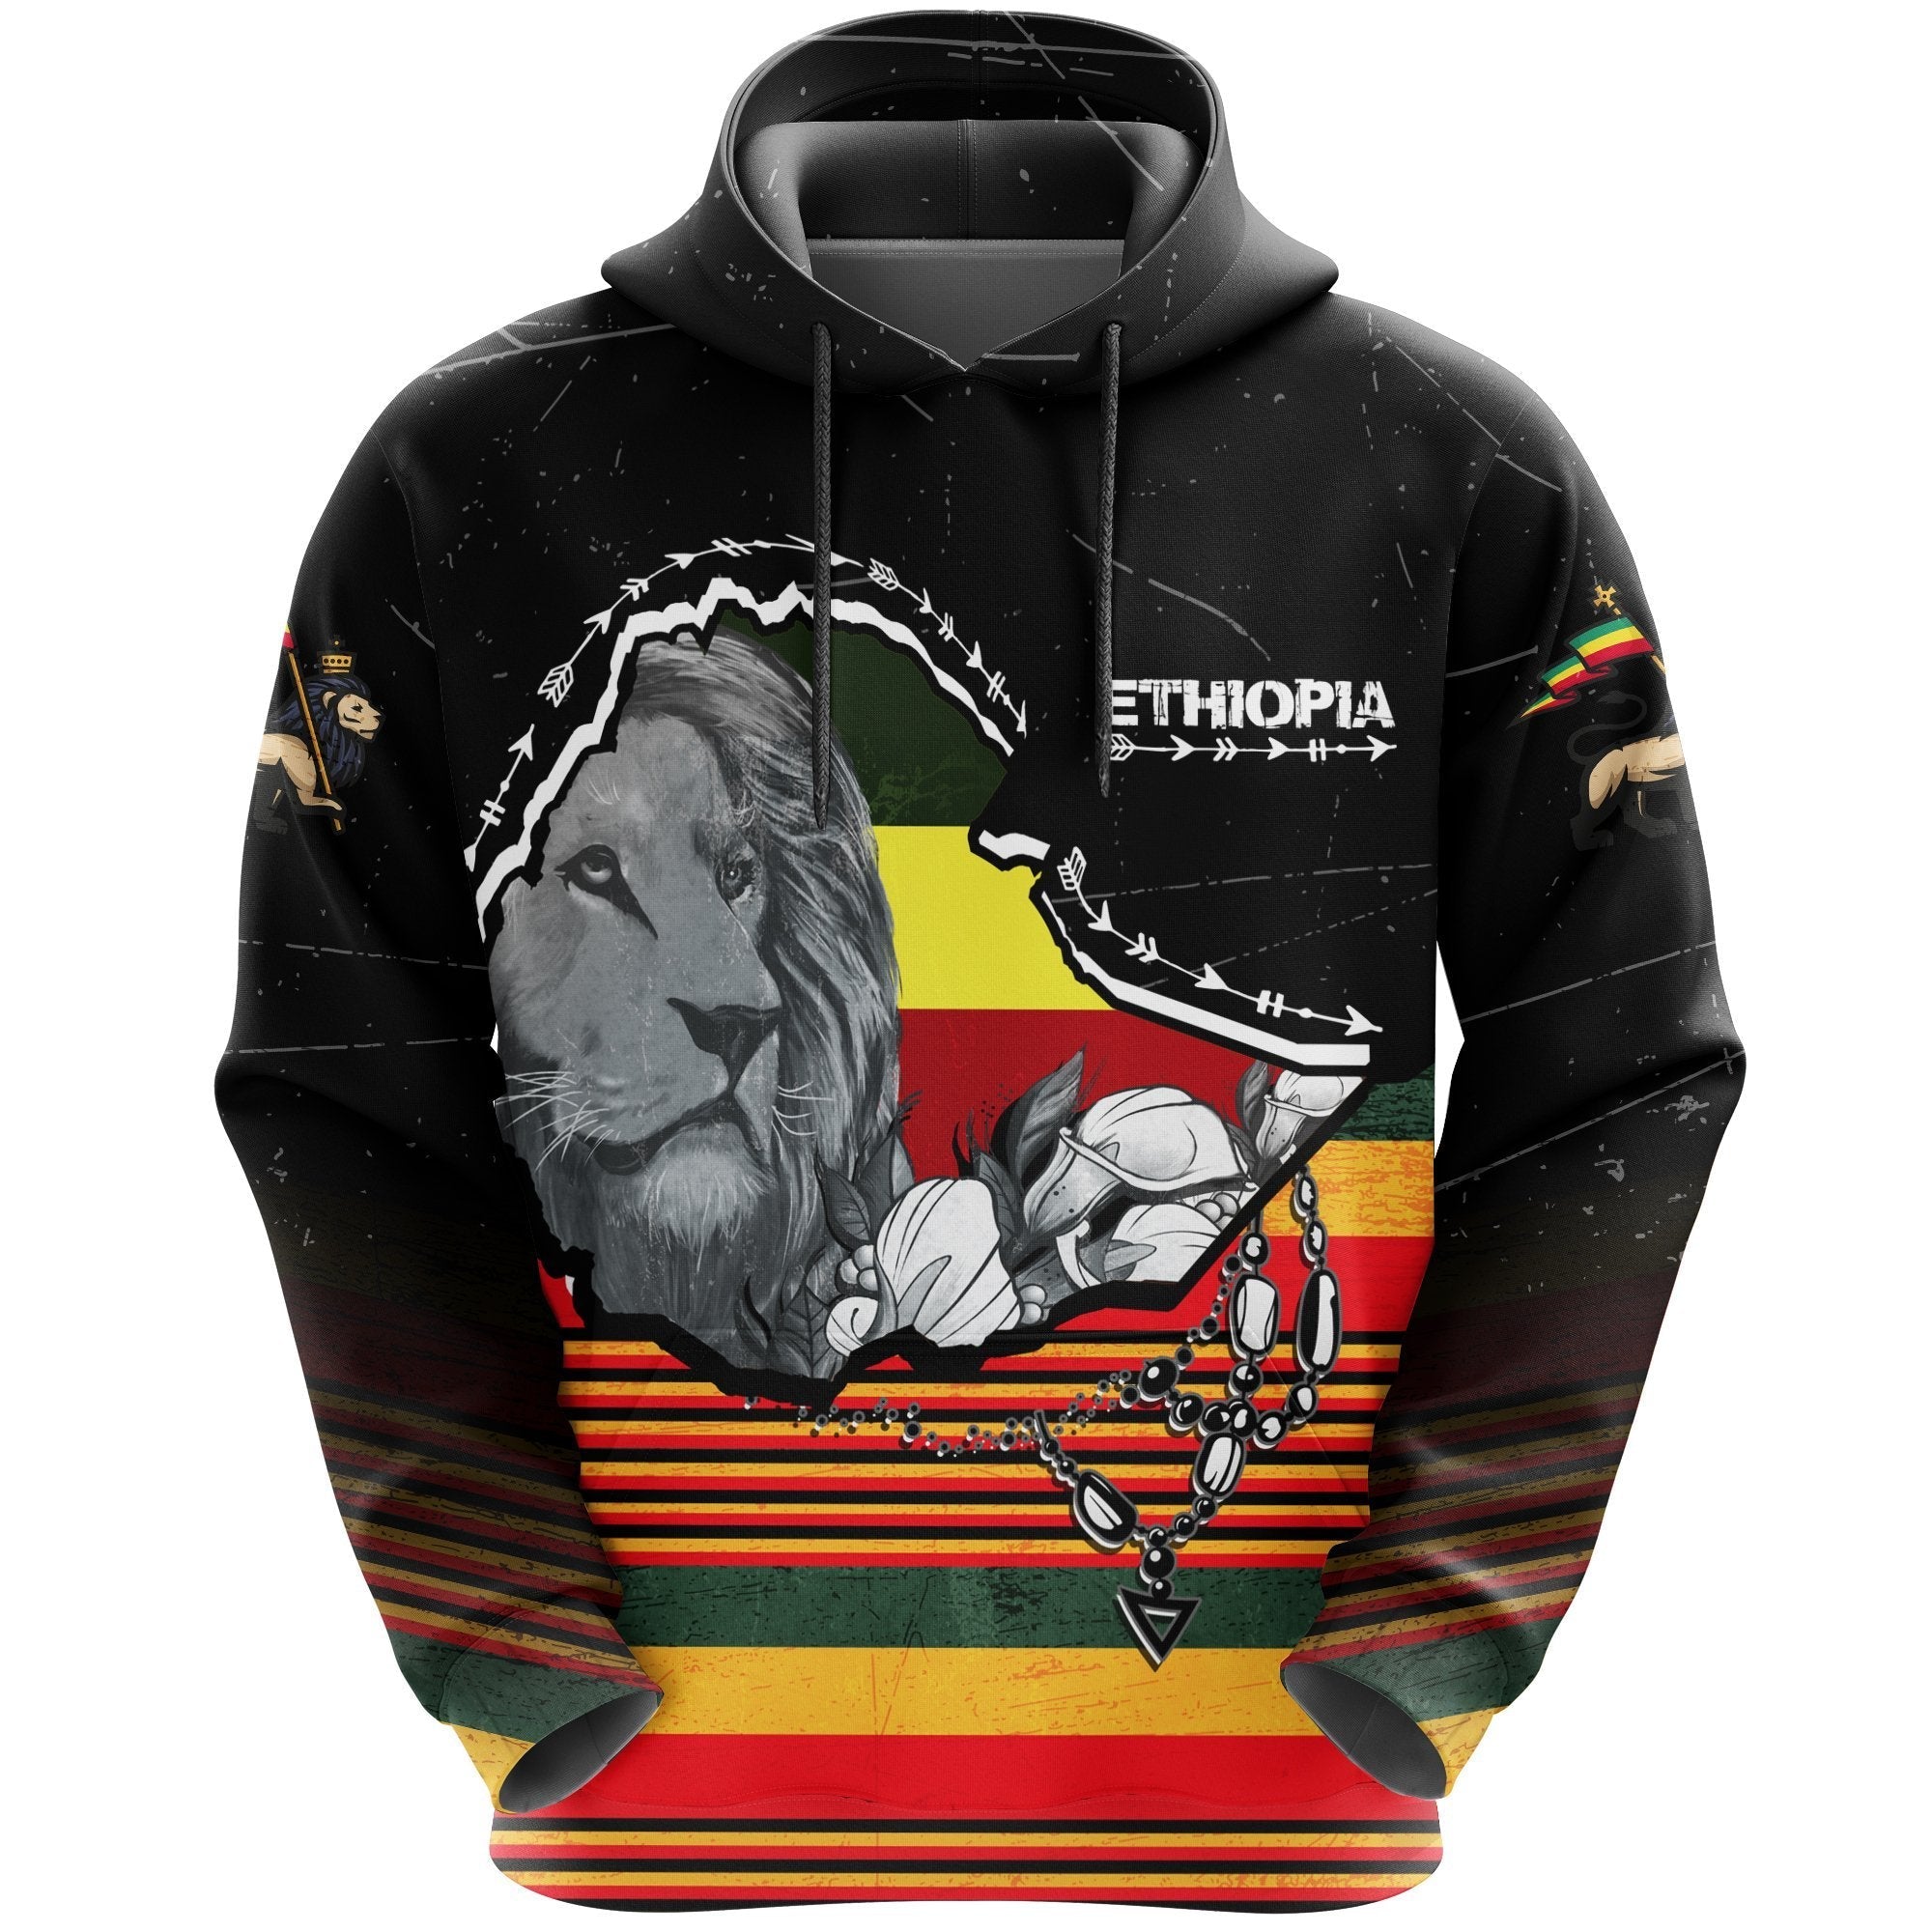 freedom-ethiopia-hoodie-lion-of-judah